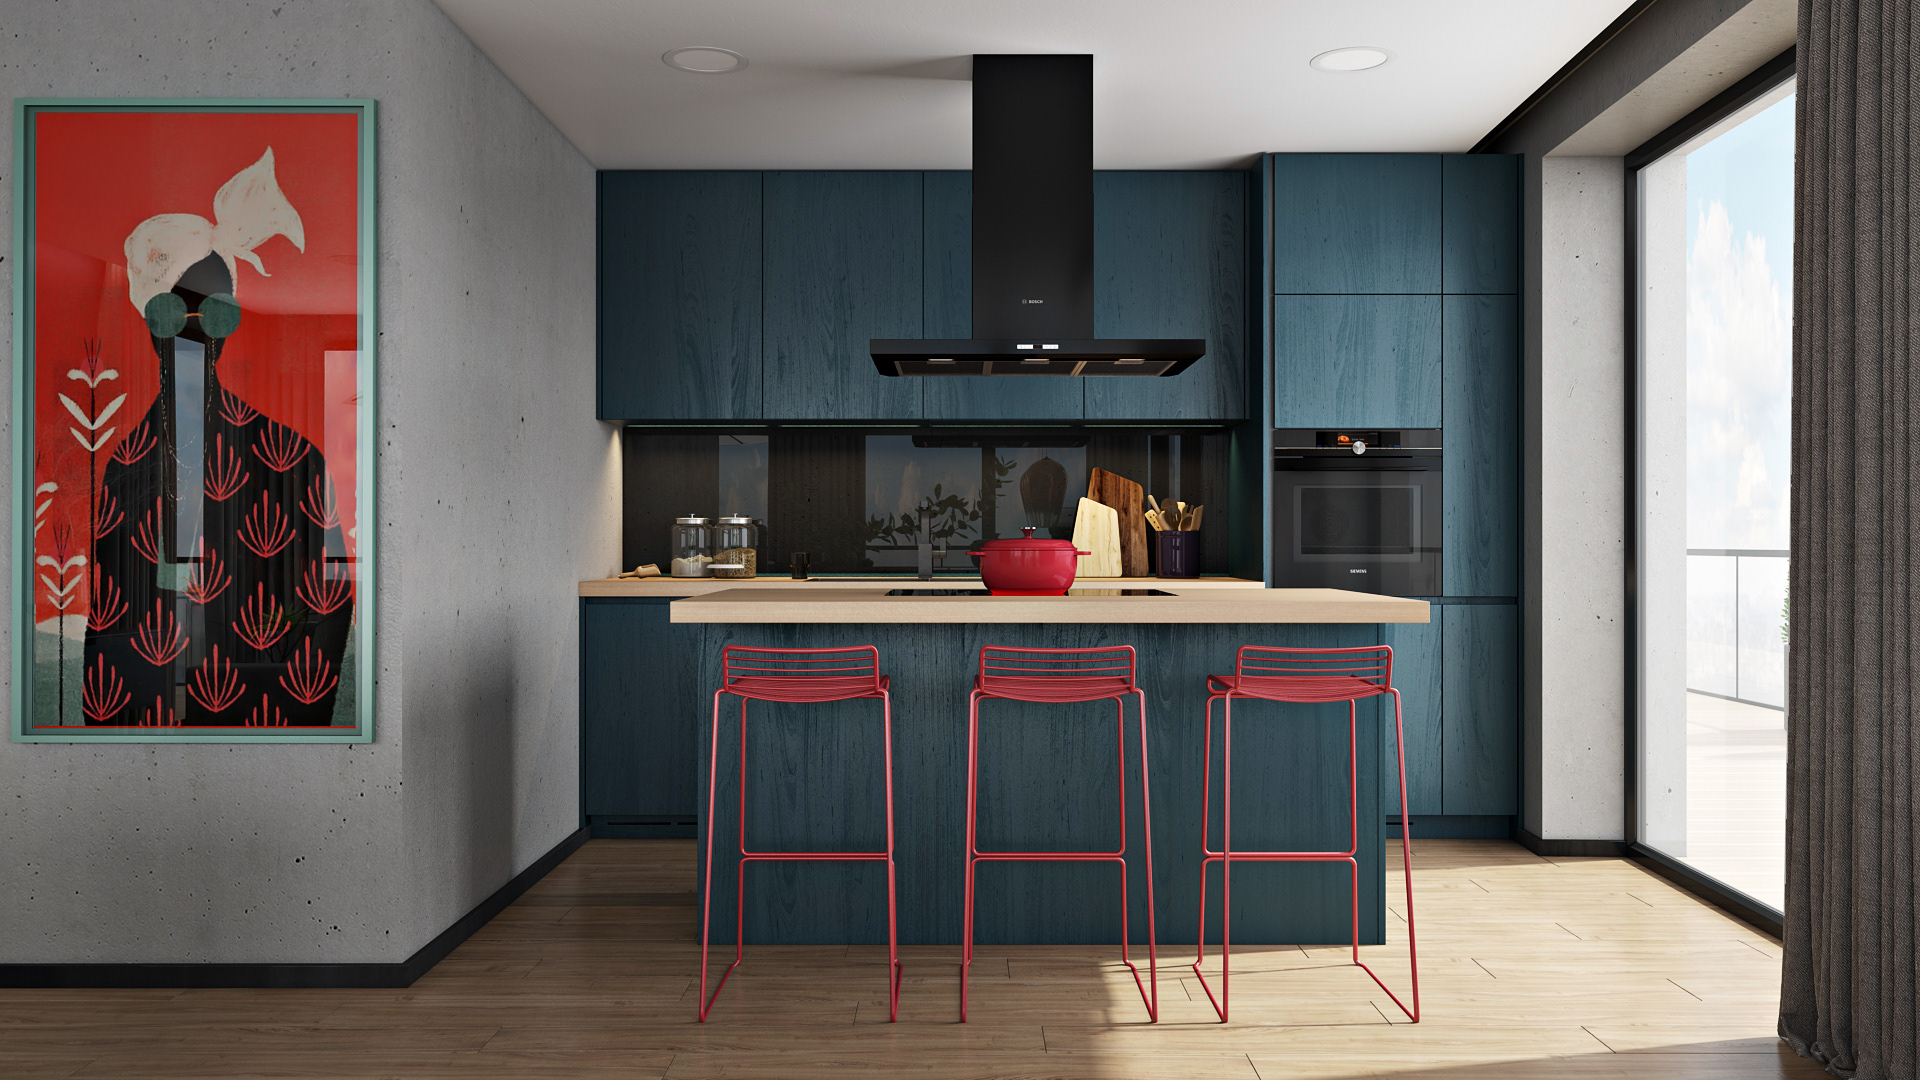 厨房设计讲究多层级的空间感受，蓝色橱柜配以红色吧椅，满满的立体感。